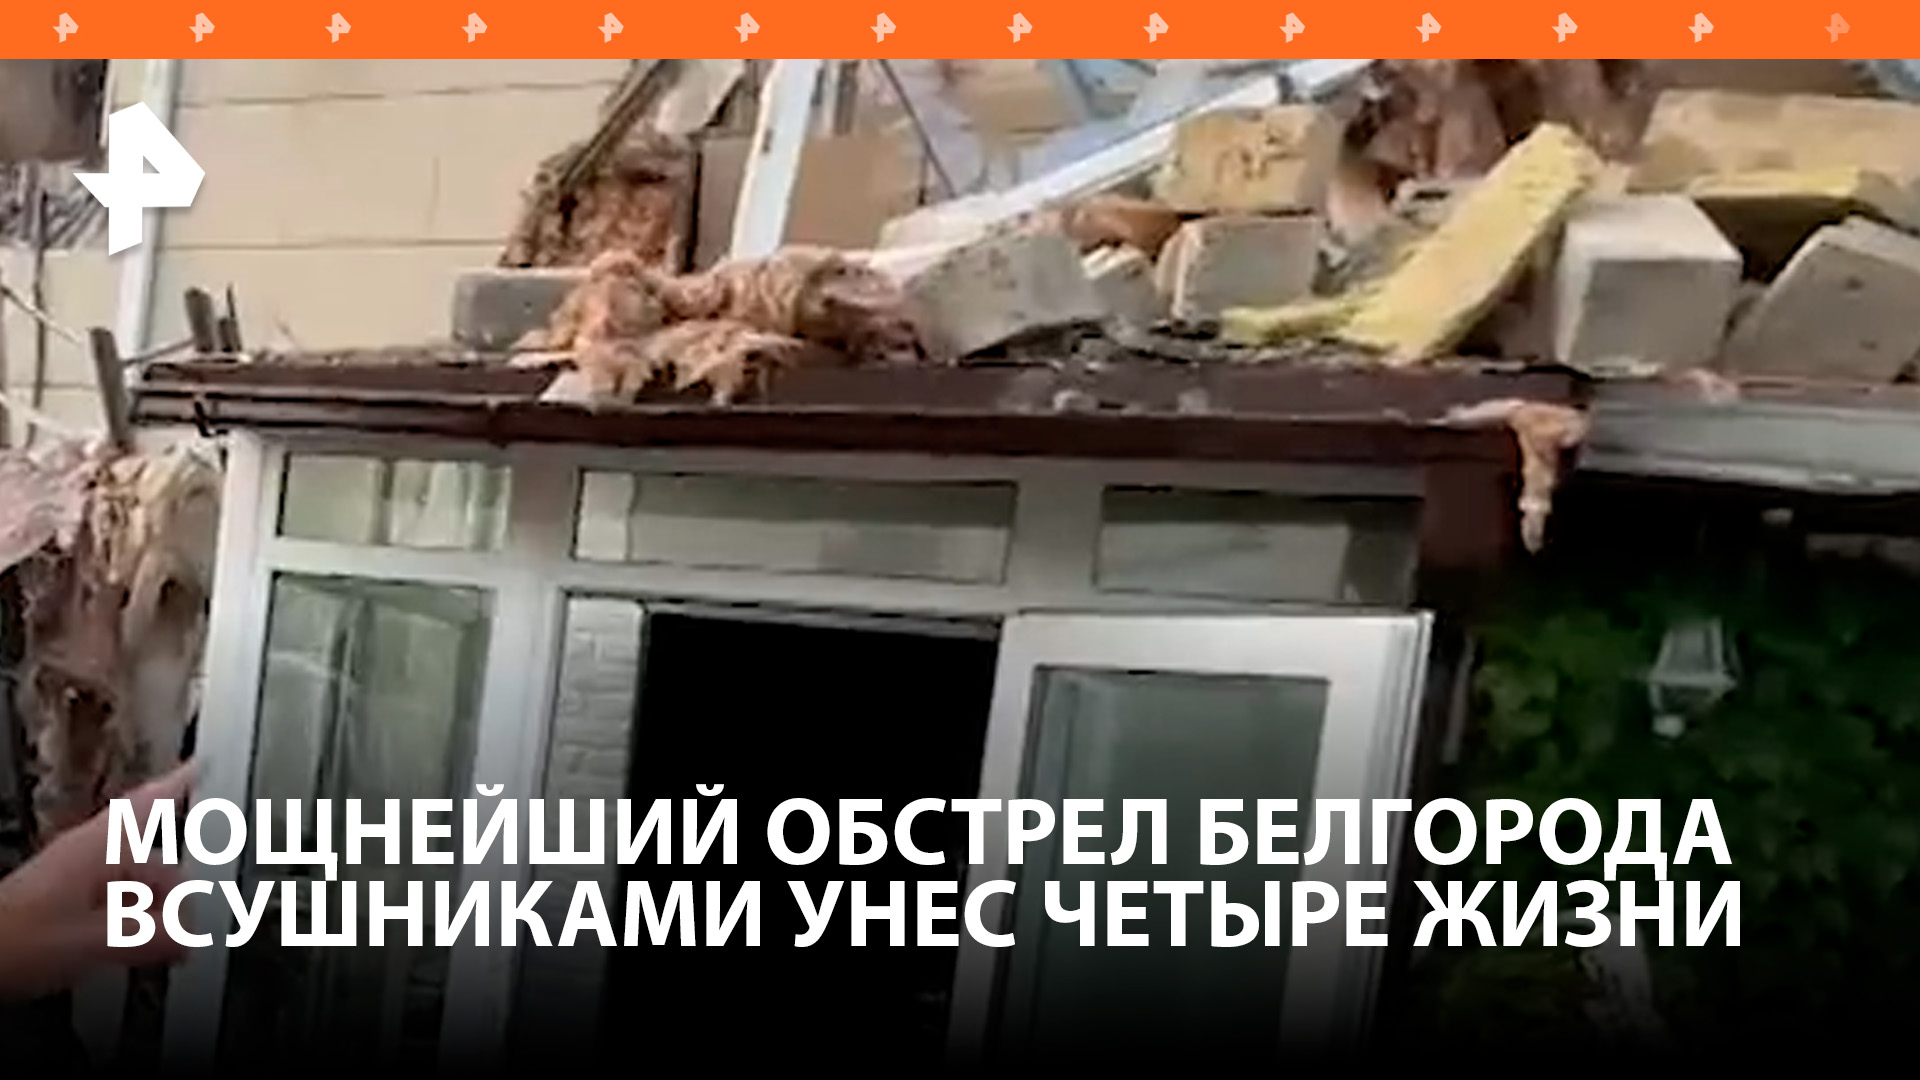 Белгород подвергся массированной атаке ВСУ, погибли четверо / РЕН Новости